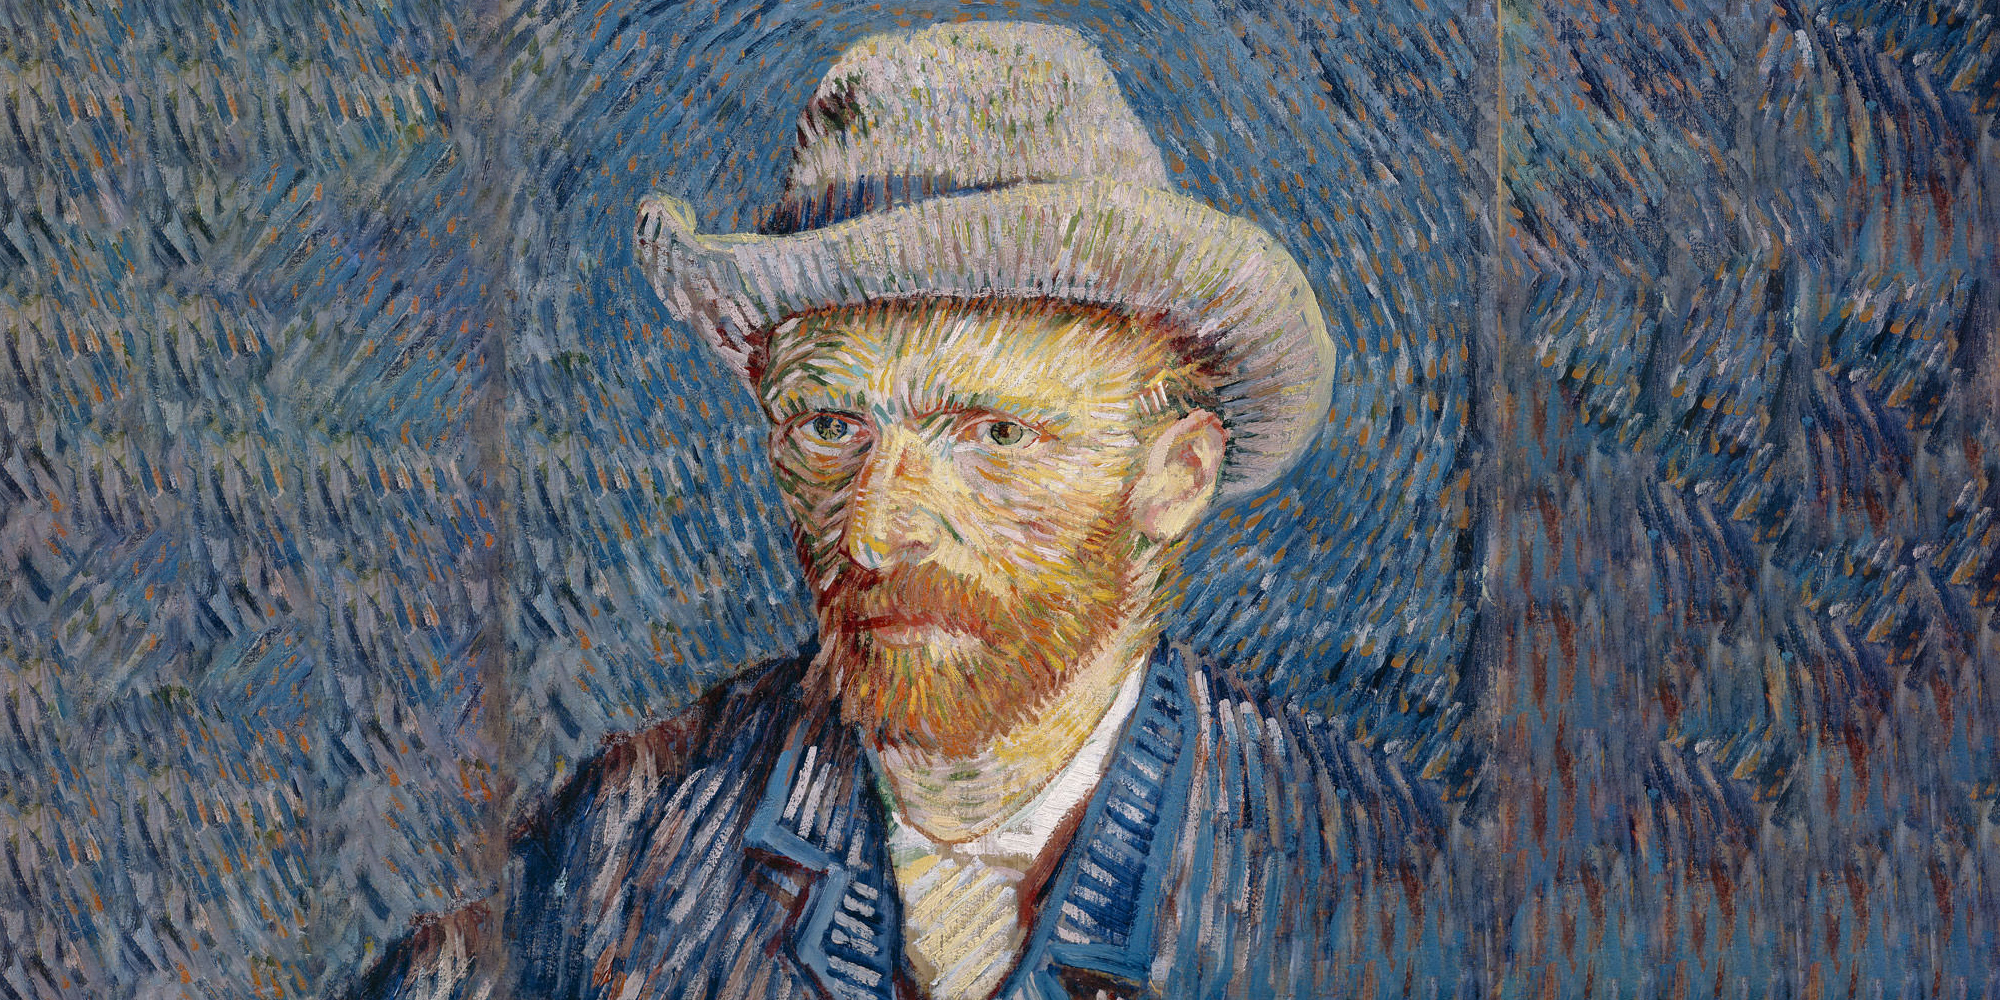 Сколько полотен продал при жизни ван гог. Винсент Ван Гог автопортрет. Ван Гог автопортрет 1888. Ван Гог портрет художника. Автопортрет Ван Гога в соломенной шляпе.